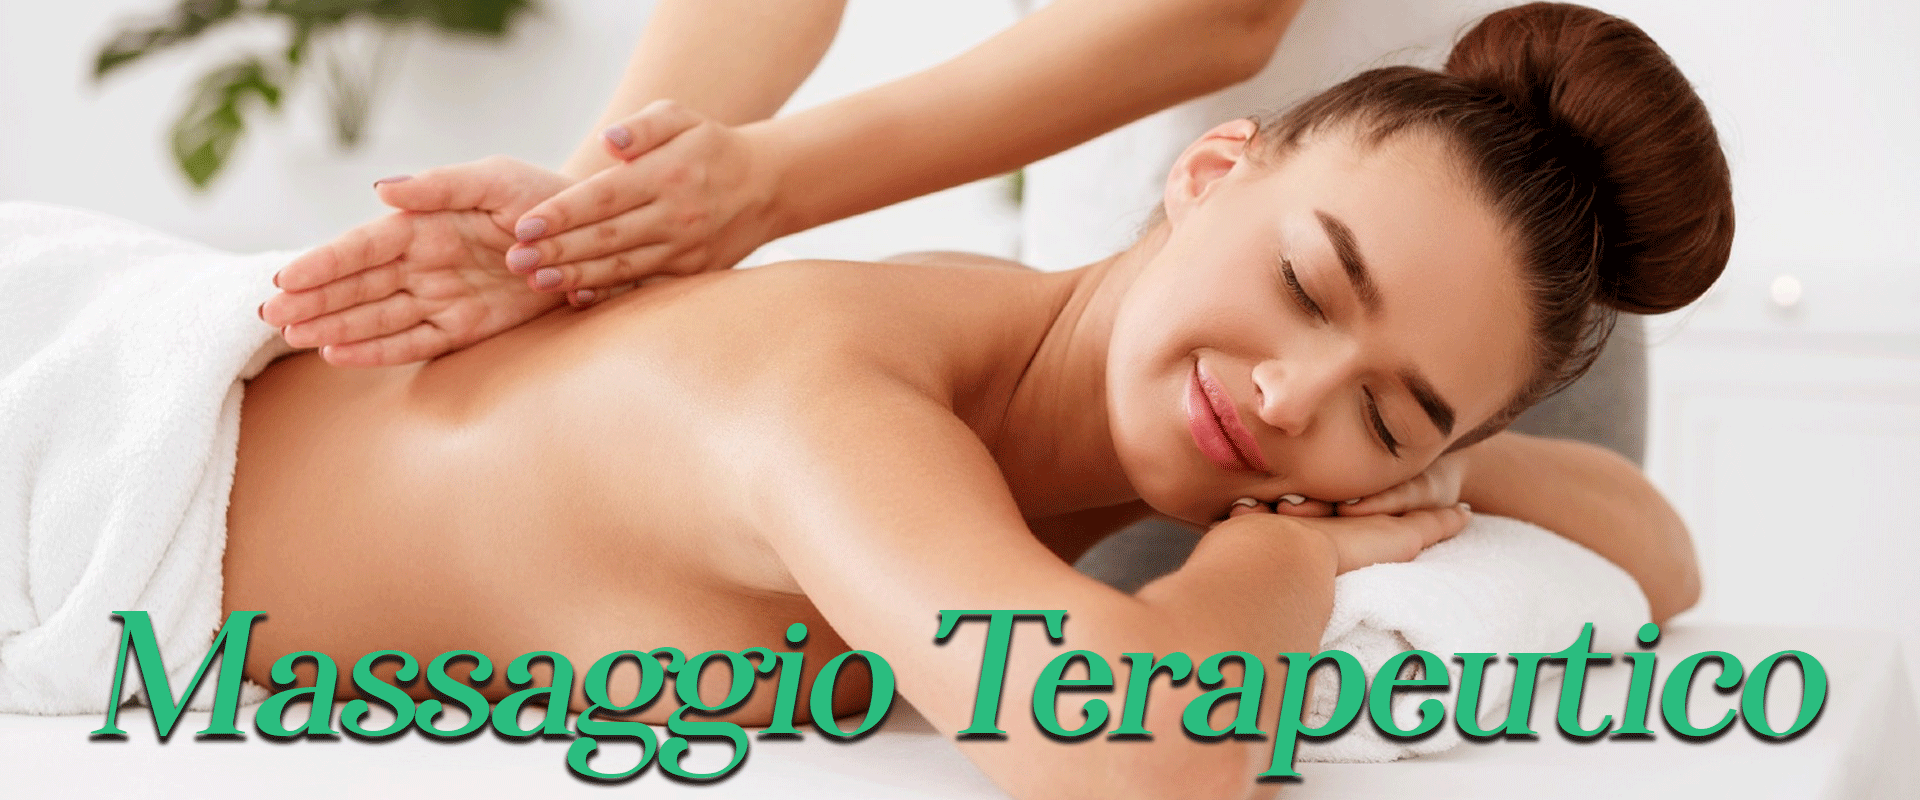 massaggio-terapeutico